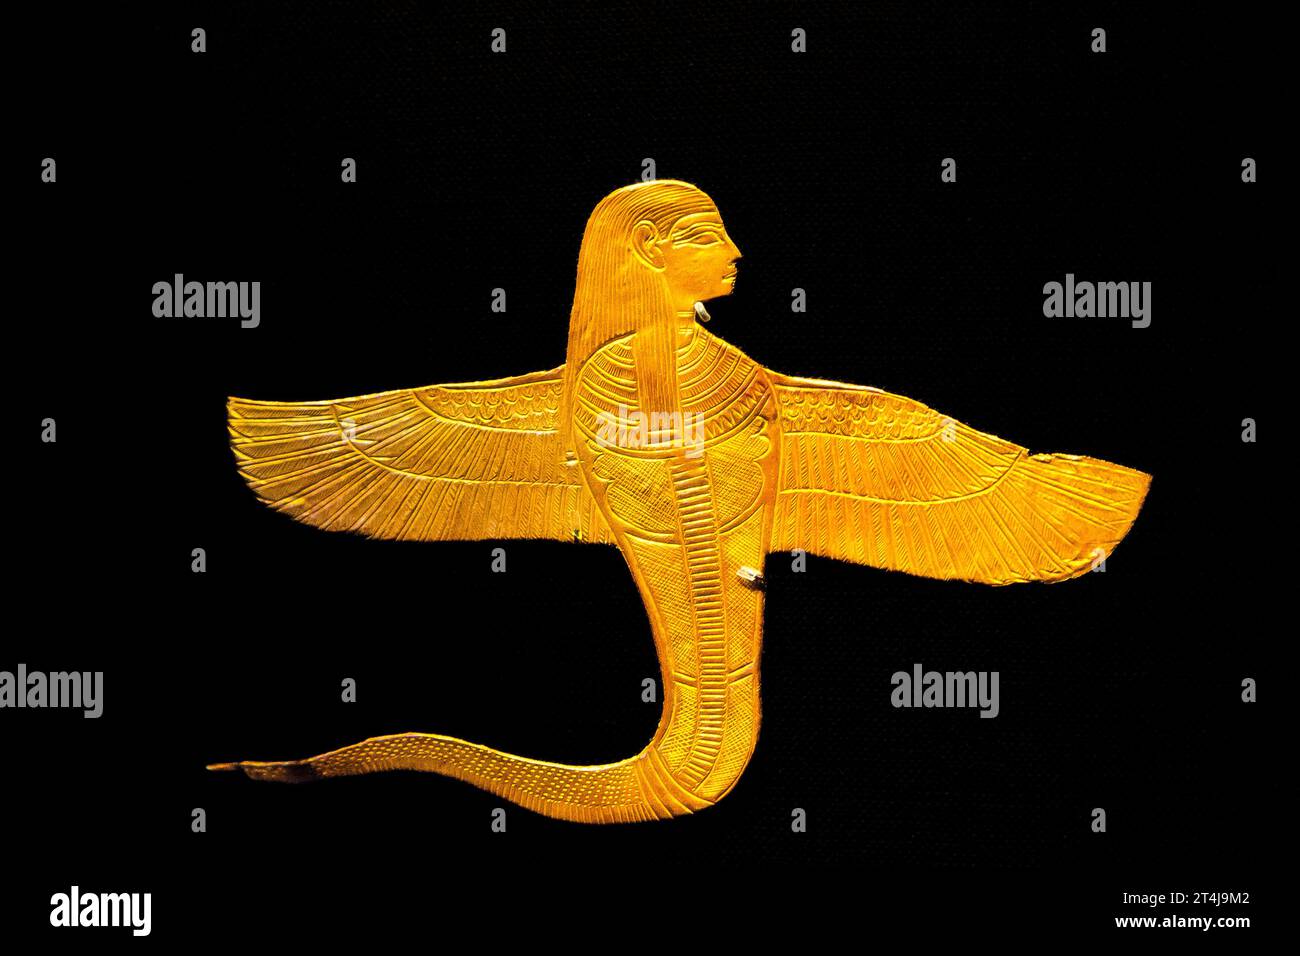 Ägypten, Kairo, Tutanchamon Schmuck, aus seinem Grab in Luxor : geflügelte Schlange mit menschlichem Kopf. Amulett in Gold. Stockfoto